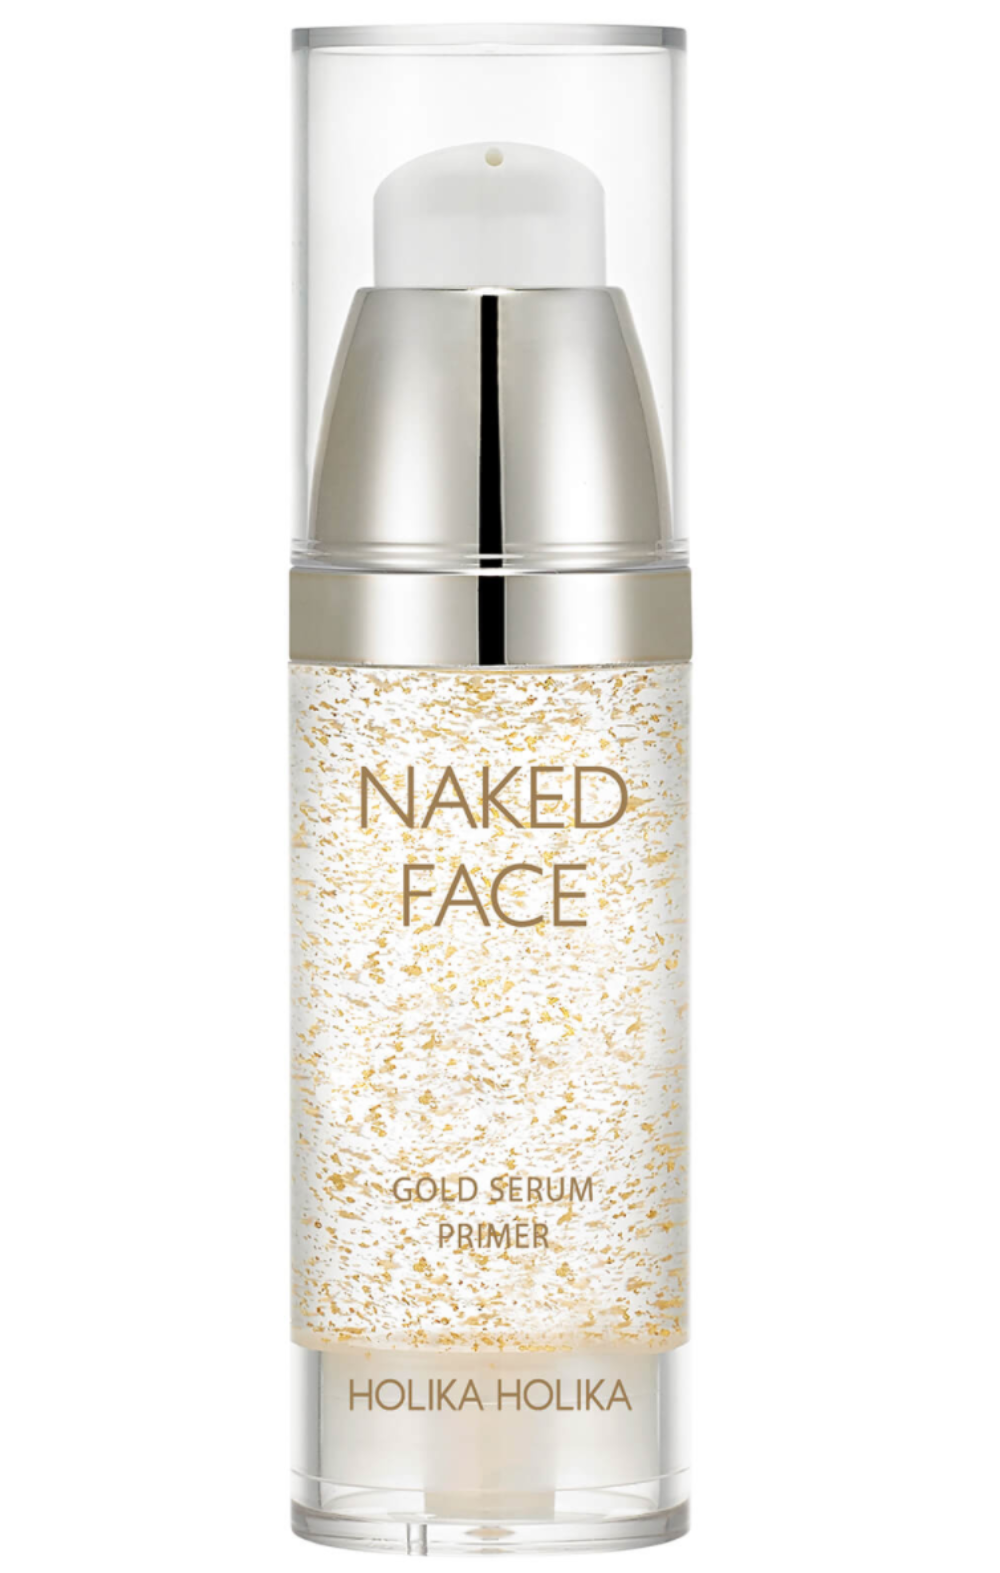 Holika Holika - Naked Face Gold Serum Primer 30ml